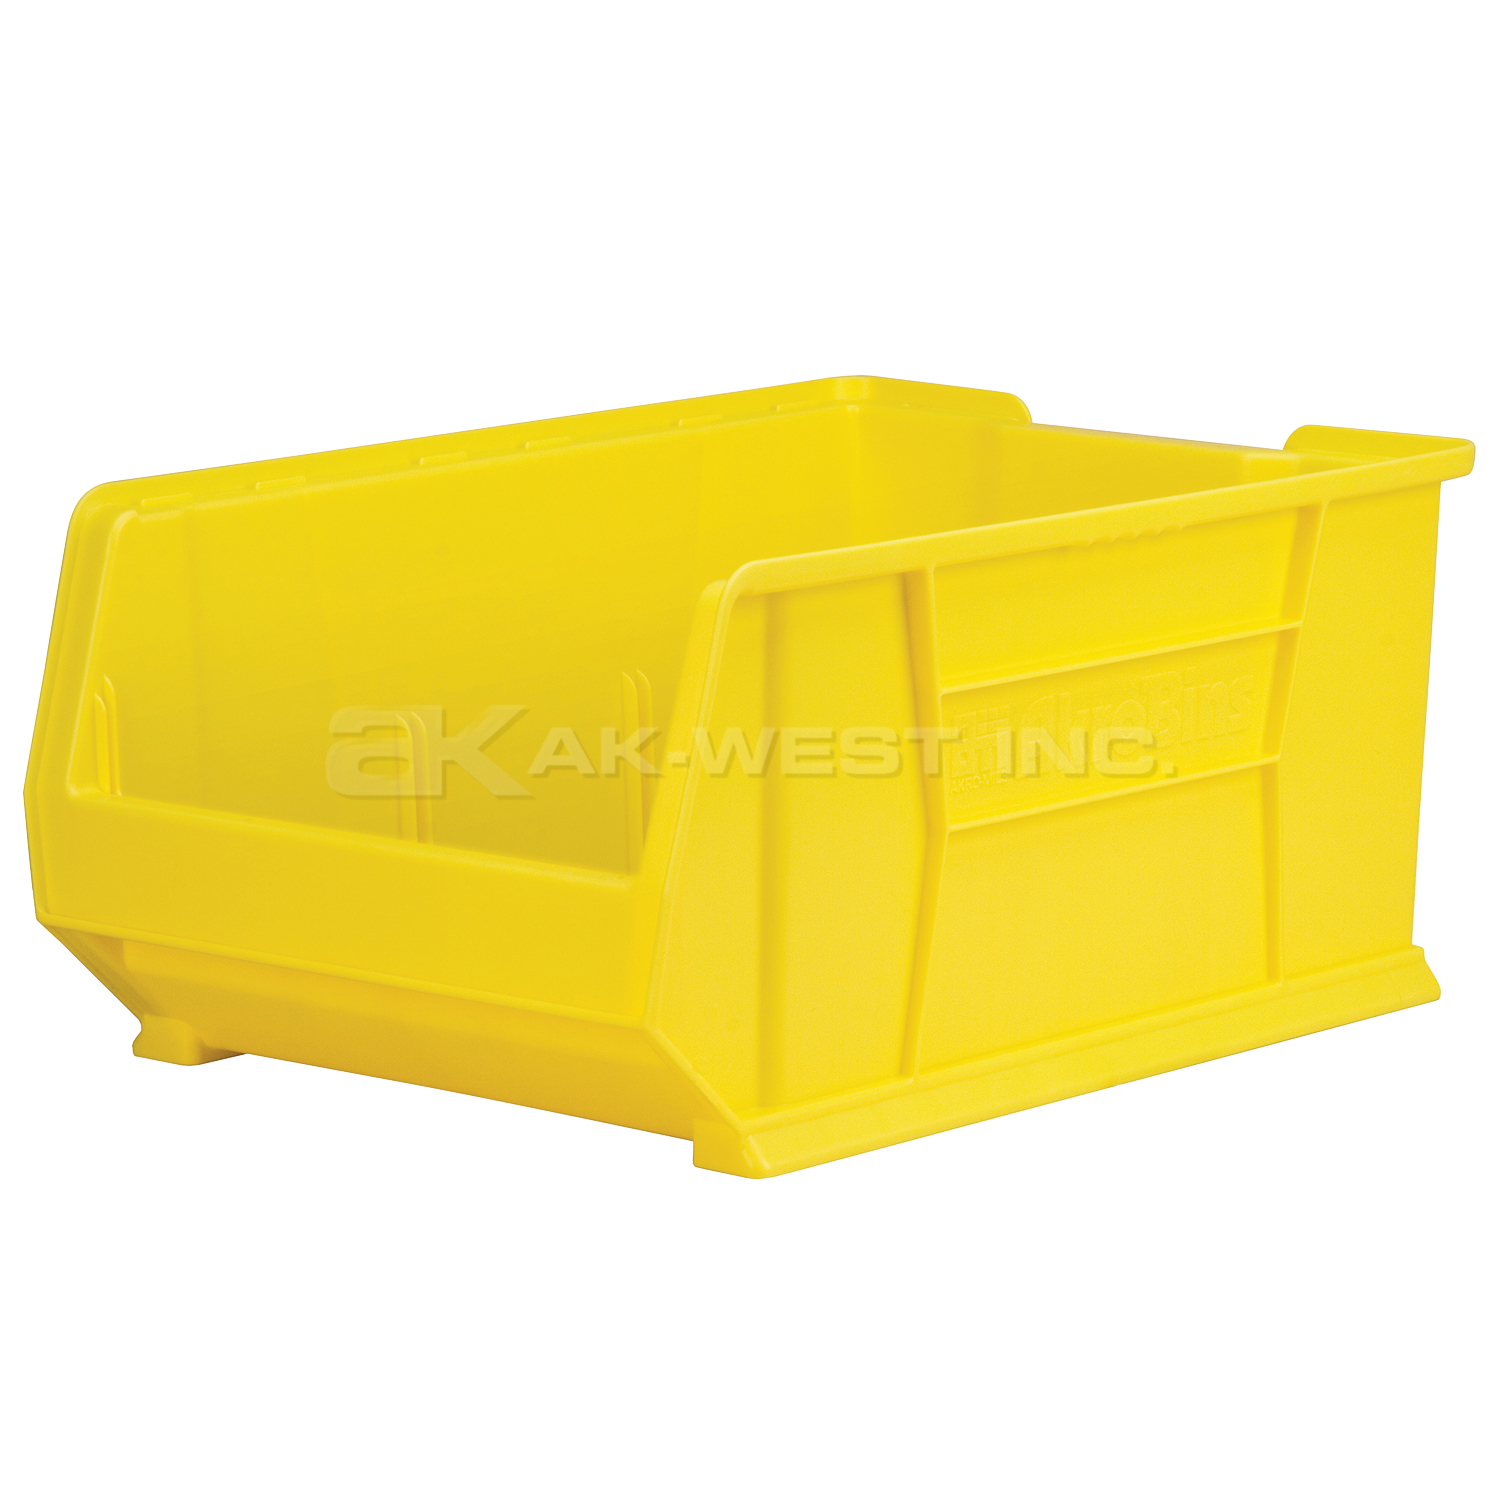 Yellow, 23-7/8" x 16-1/2" x 11" Stacking Shelf Bin (1 Per Carton)